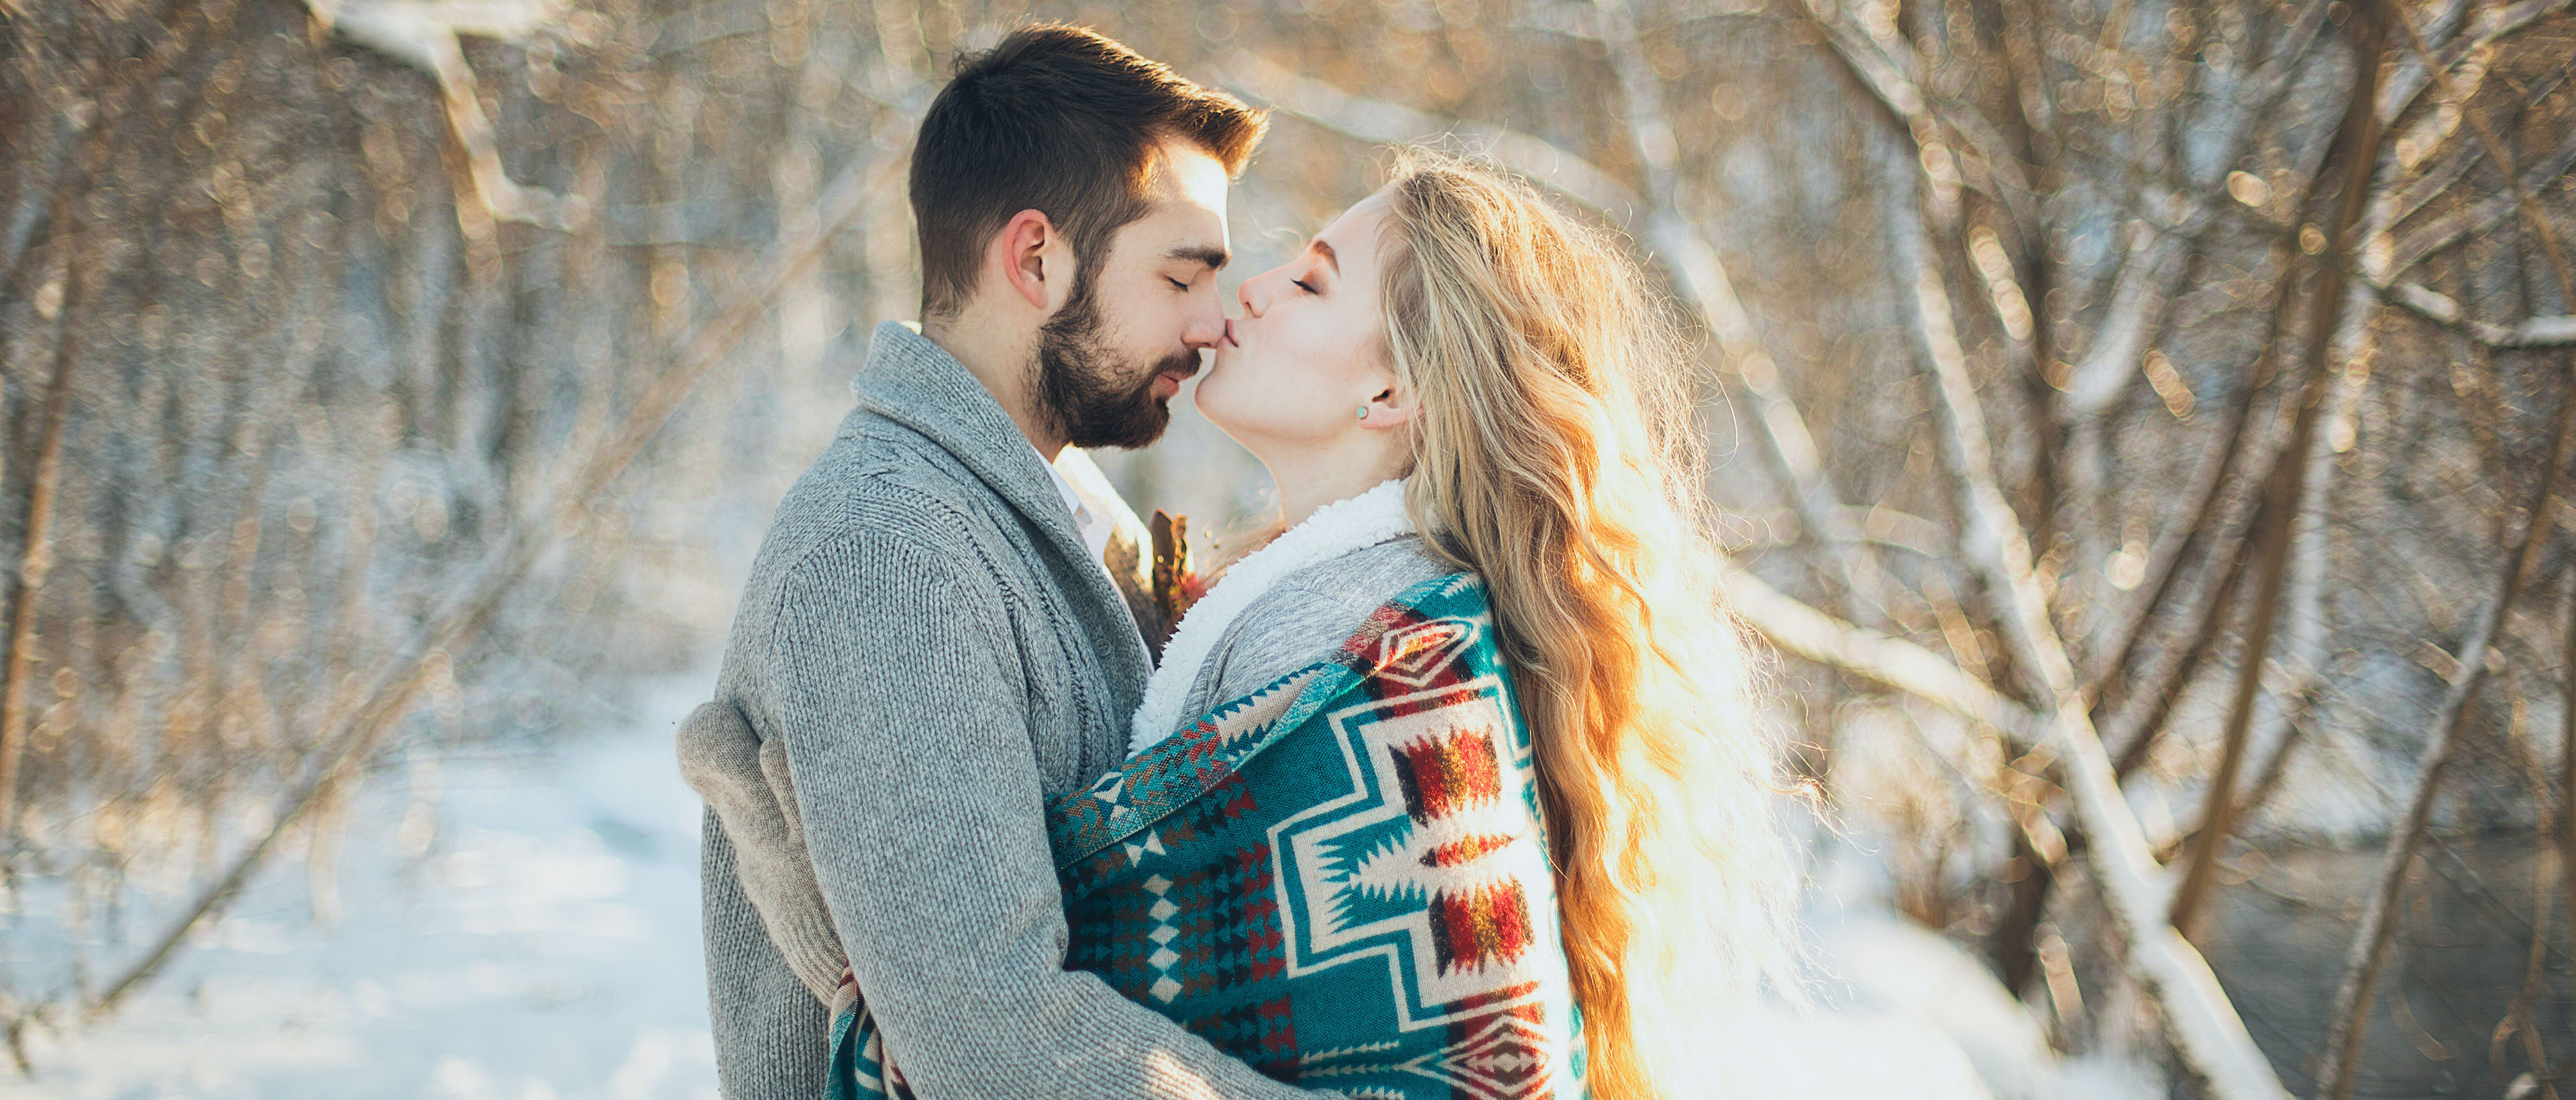 Fünf romantische Fotoideen für Pärchen zum Valentinstag